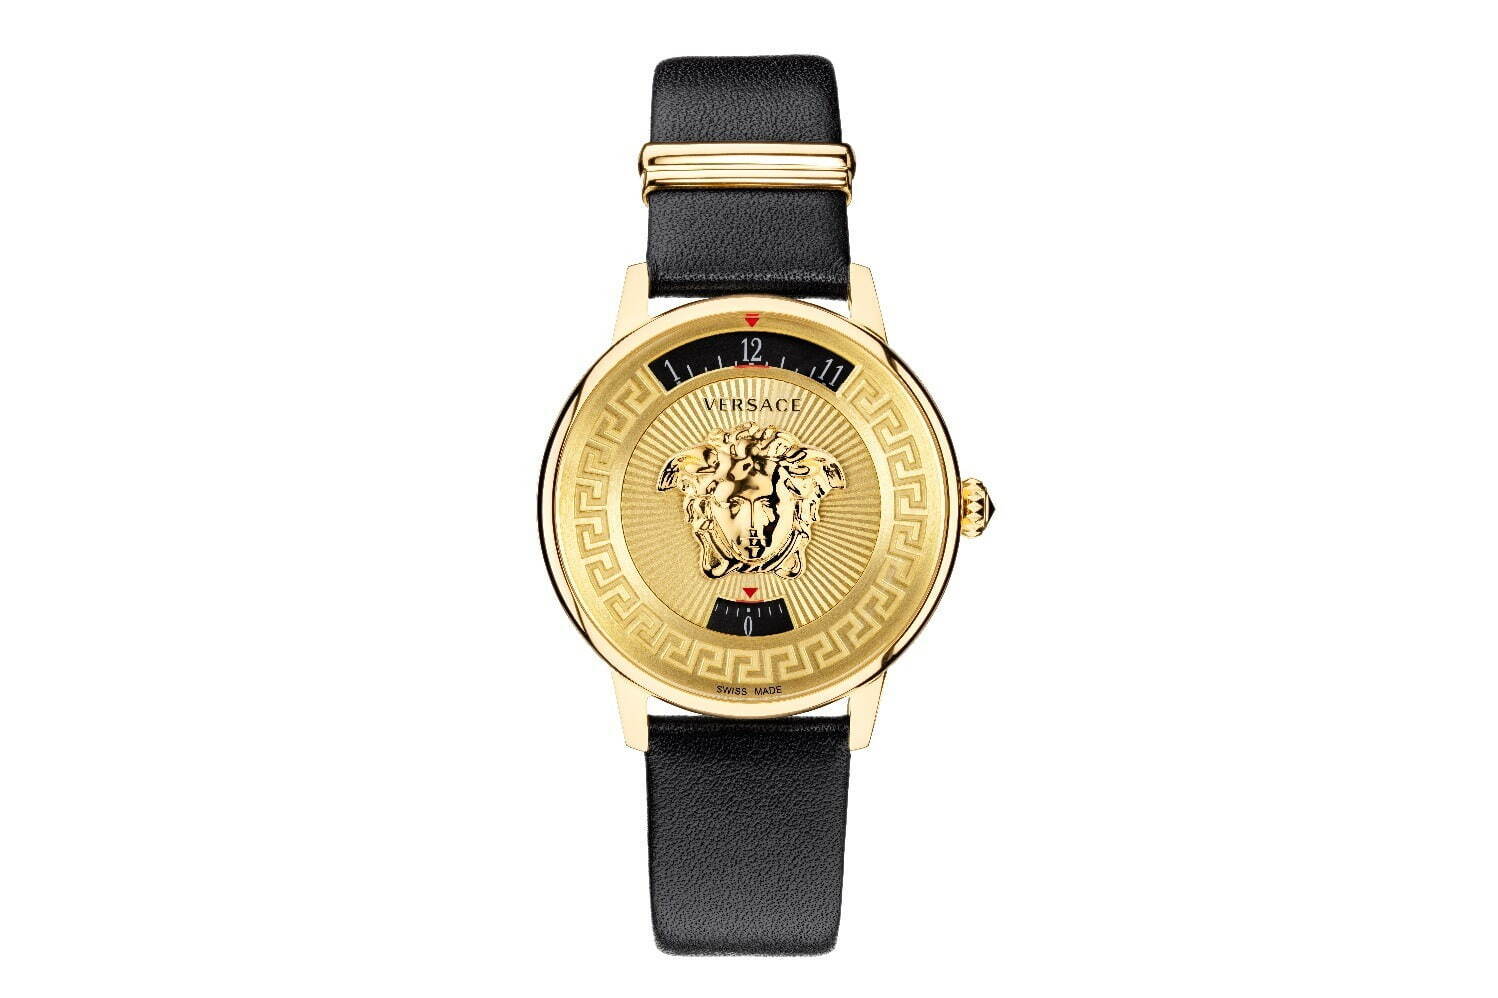 ヴェルサーチェ「メドゥーサ」が“時を隠す”蓋付き腕時計、グレカ模様の